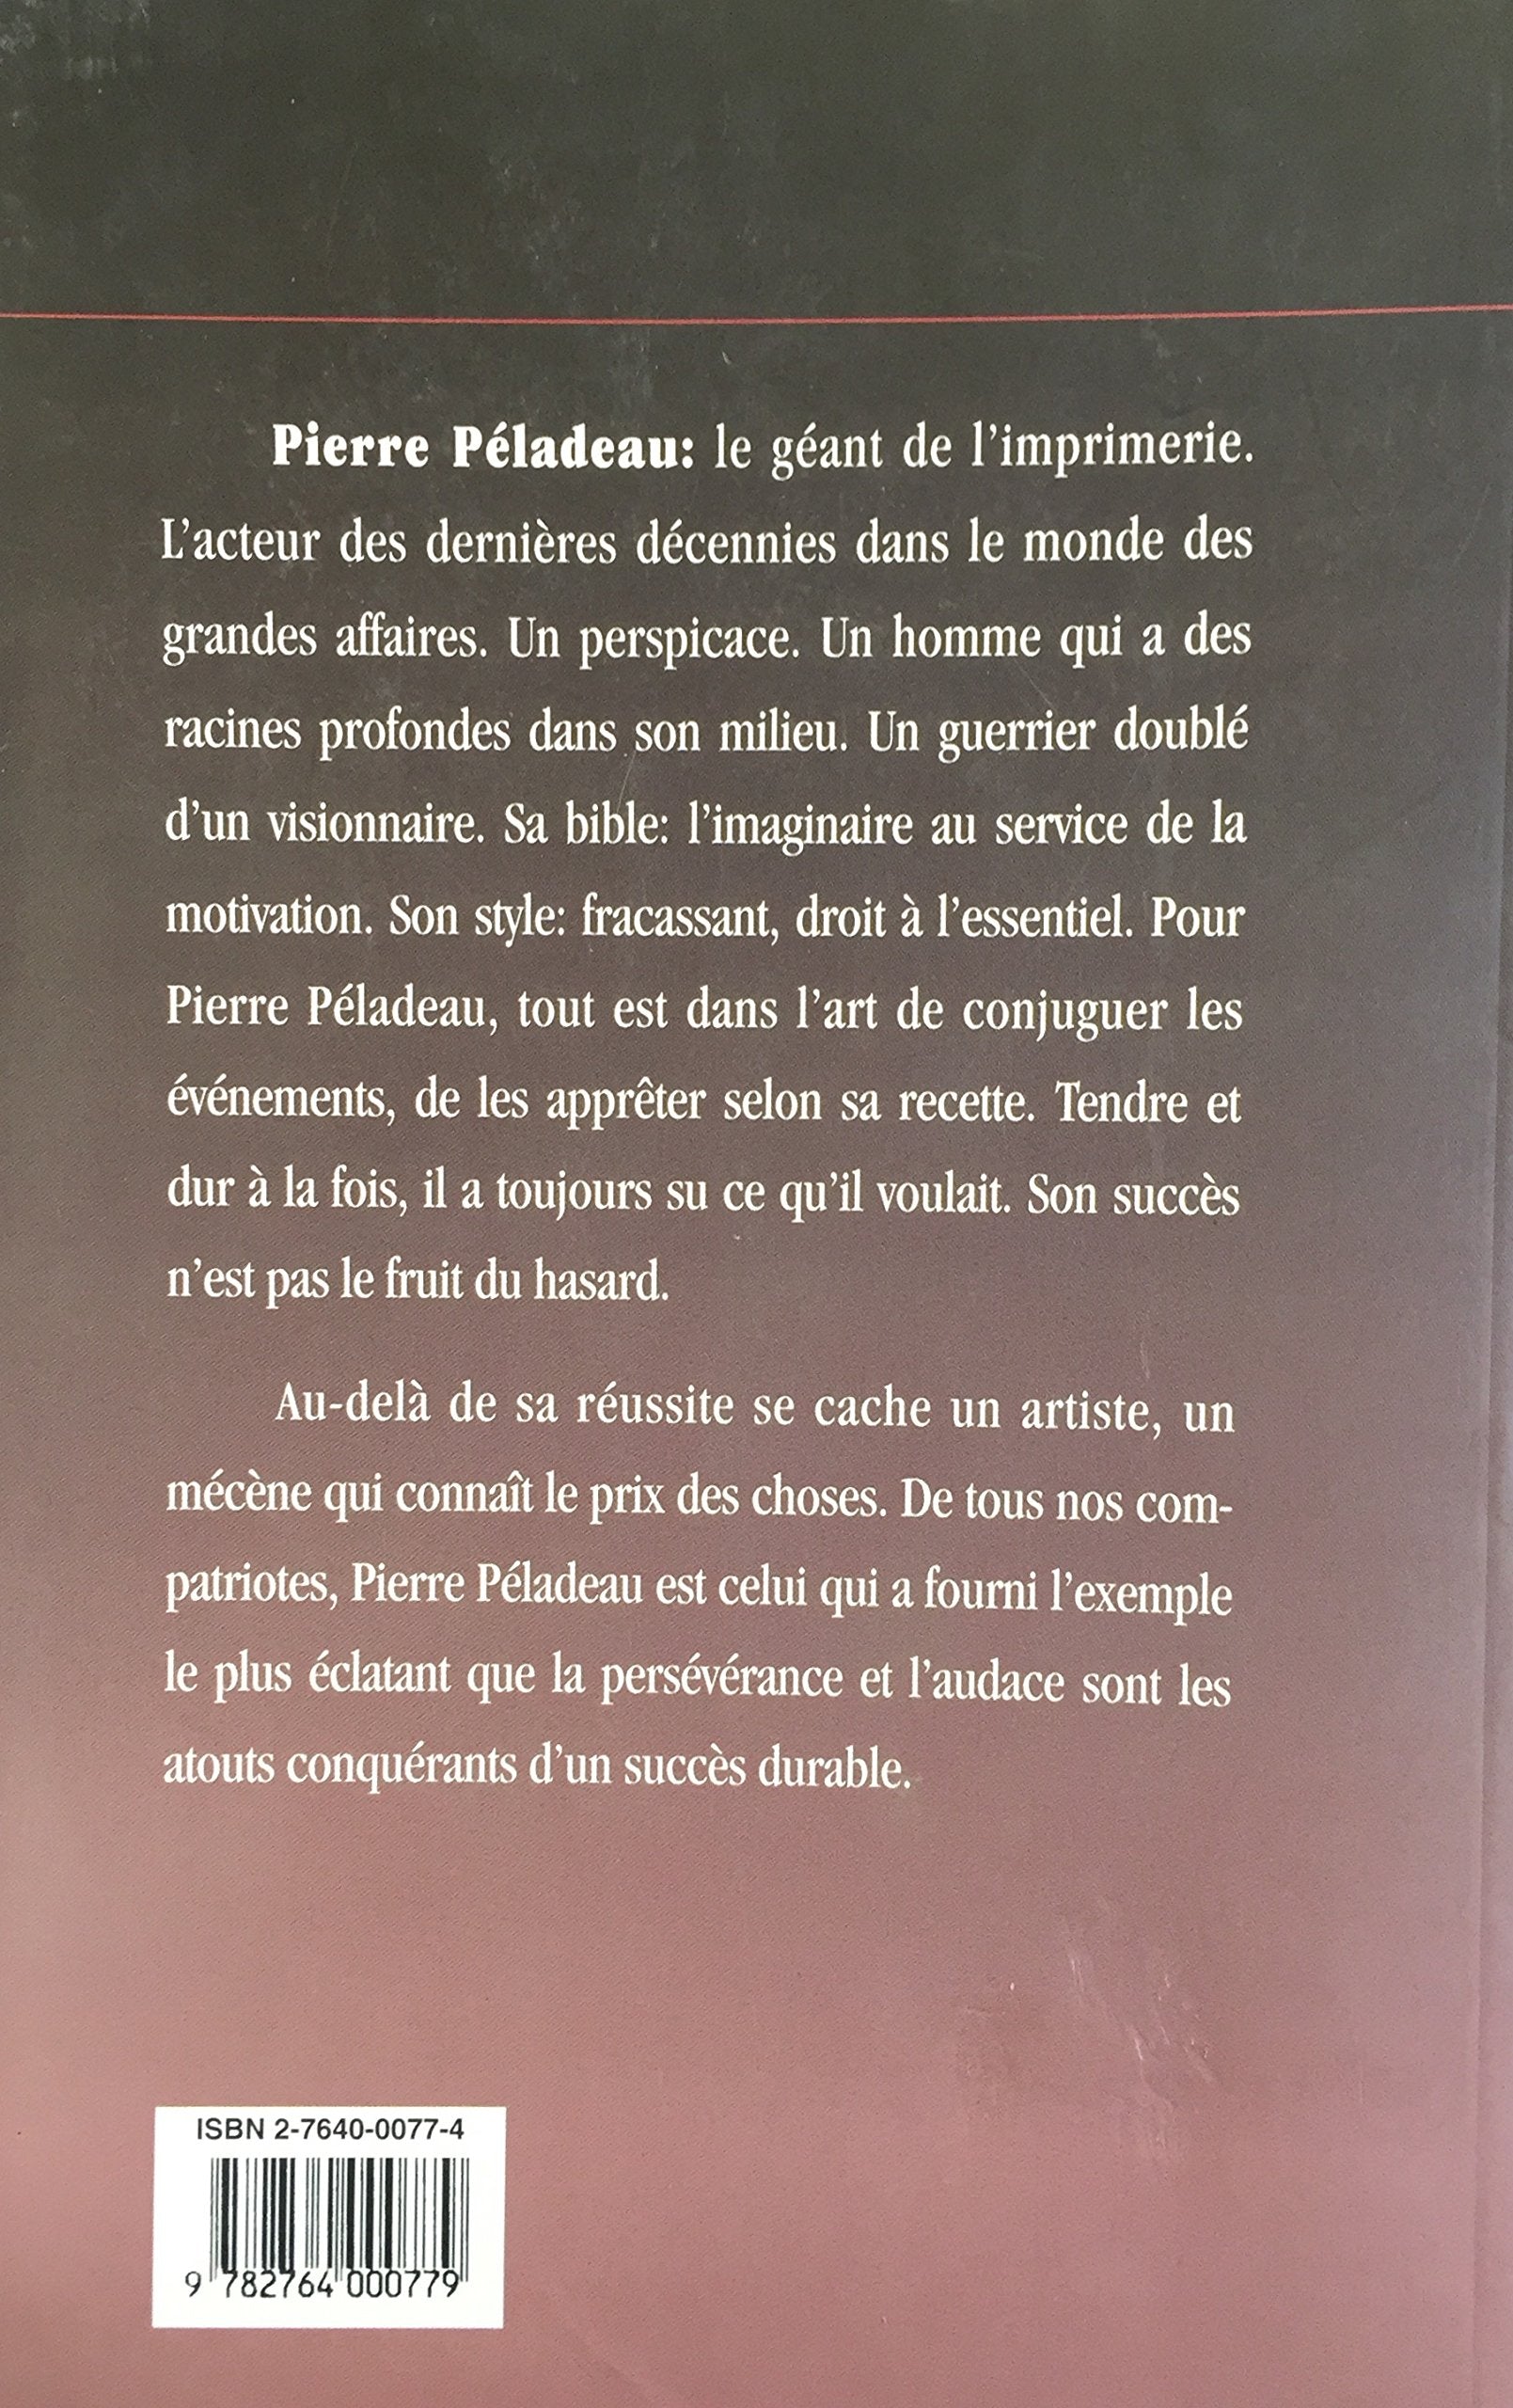 Pierre Péladeau : biographie (François-Xavier Simard)